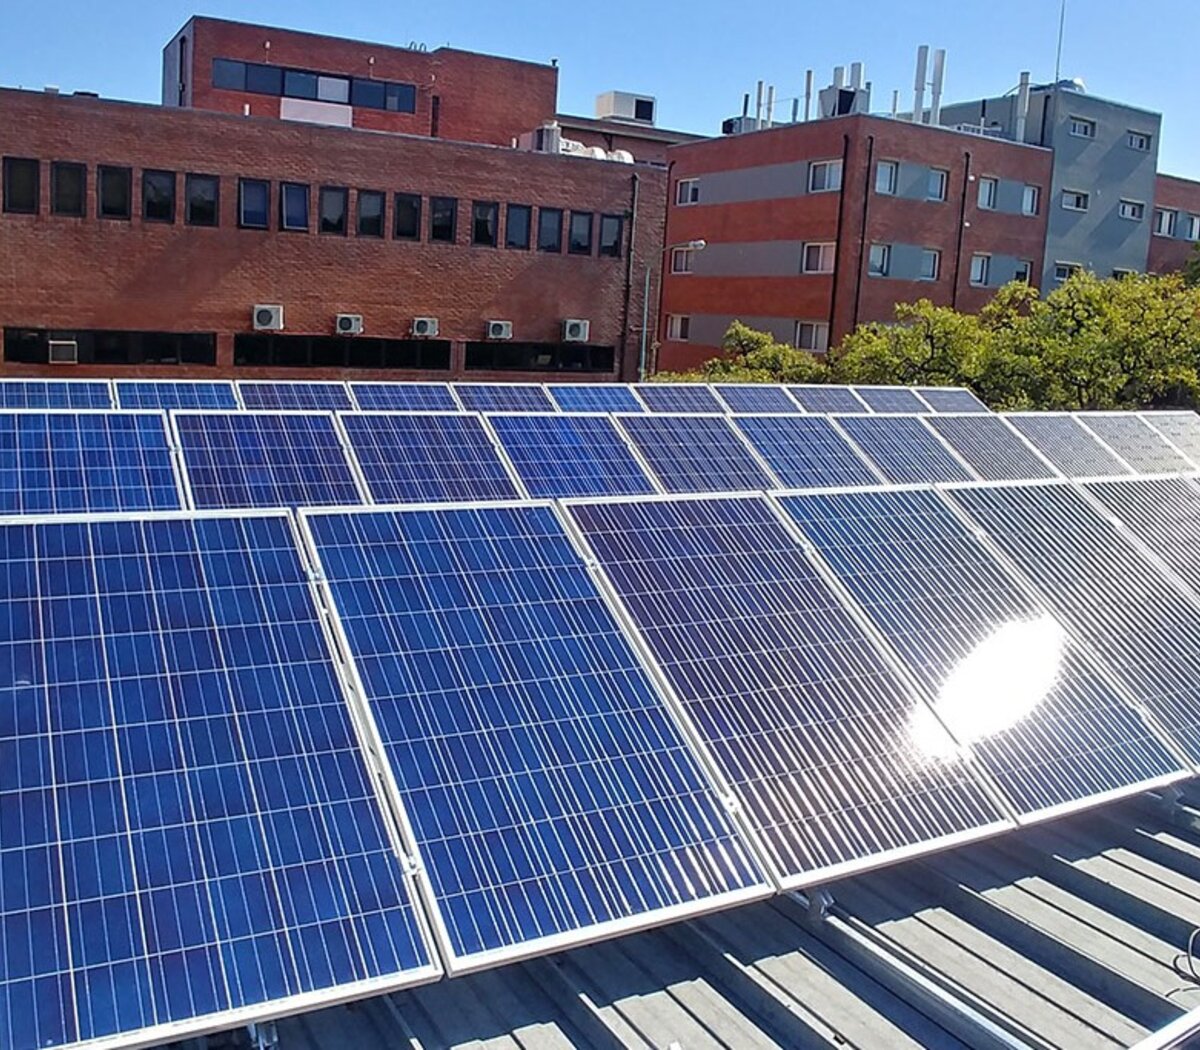 Enchufe solar para ventanas que genera electricidad – Ciudad Sustentable